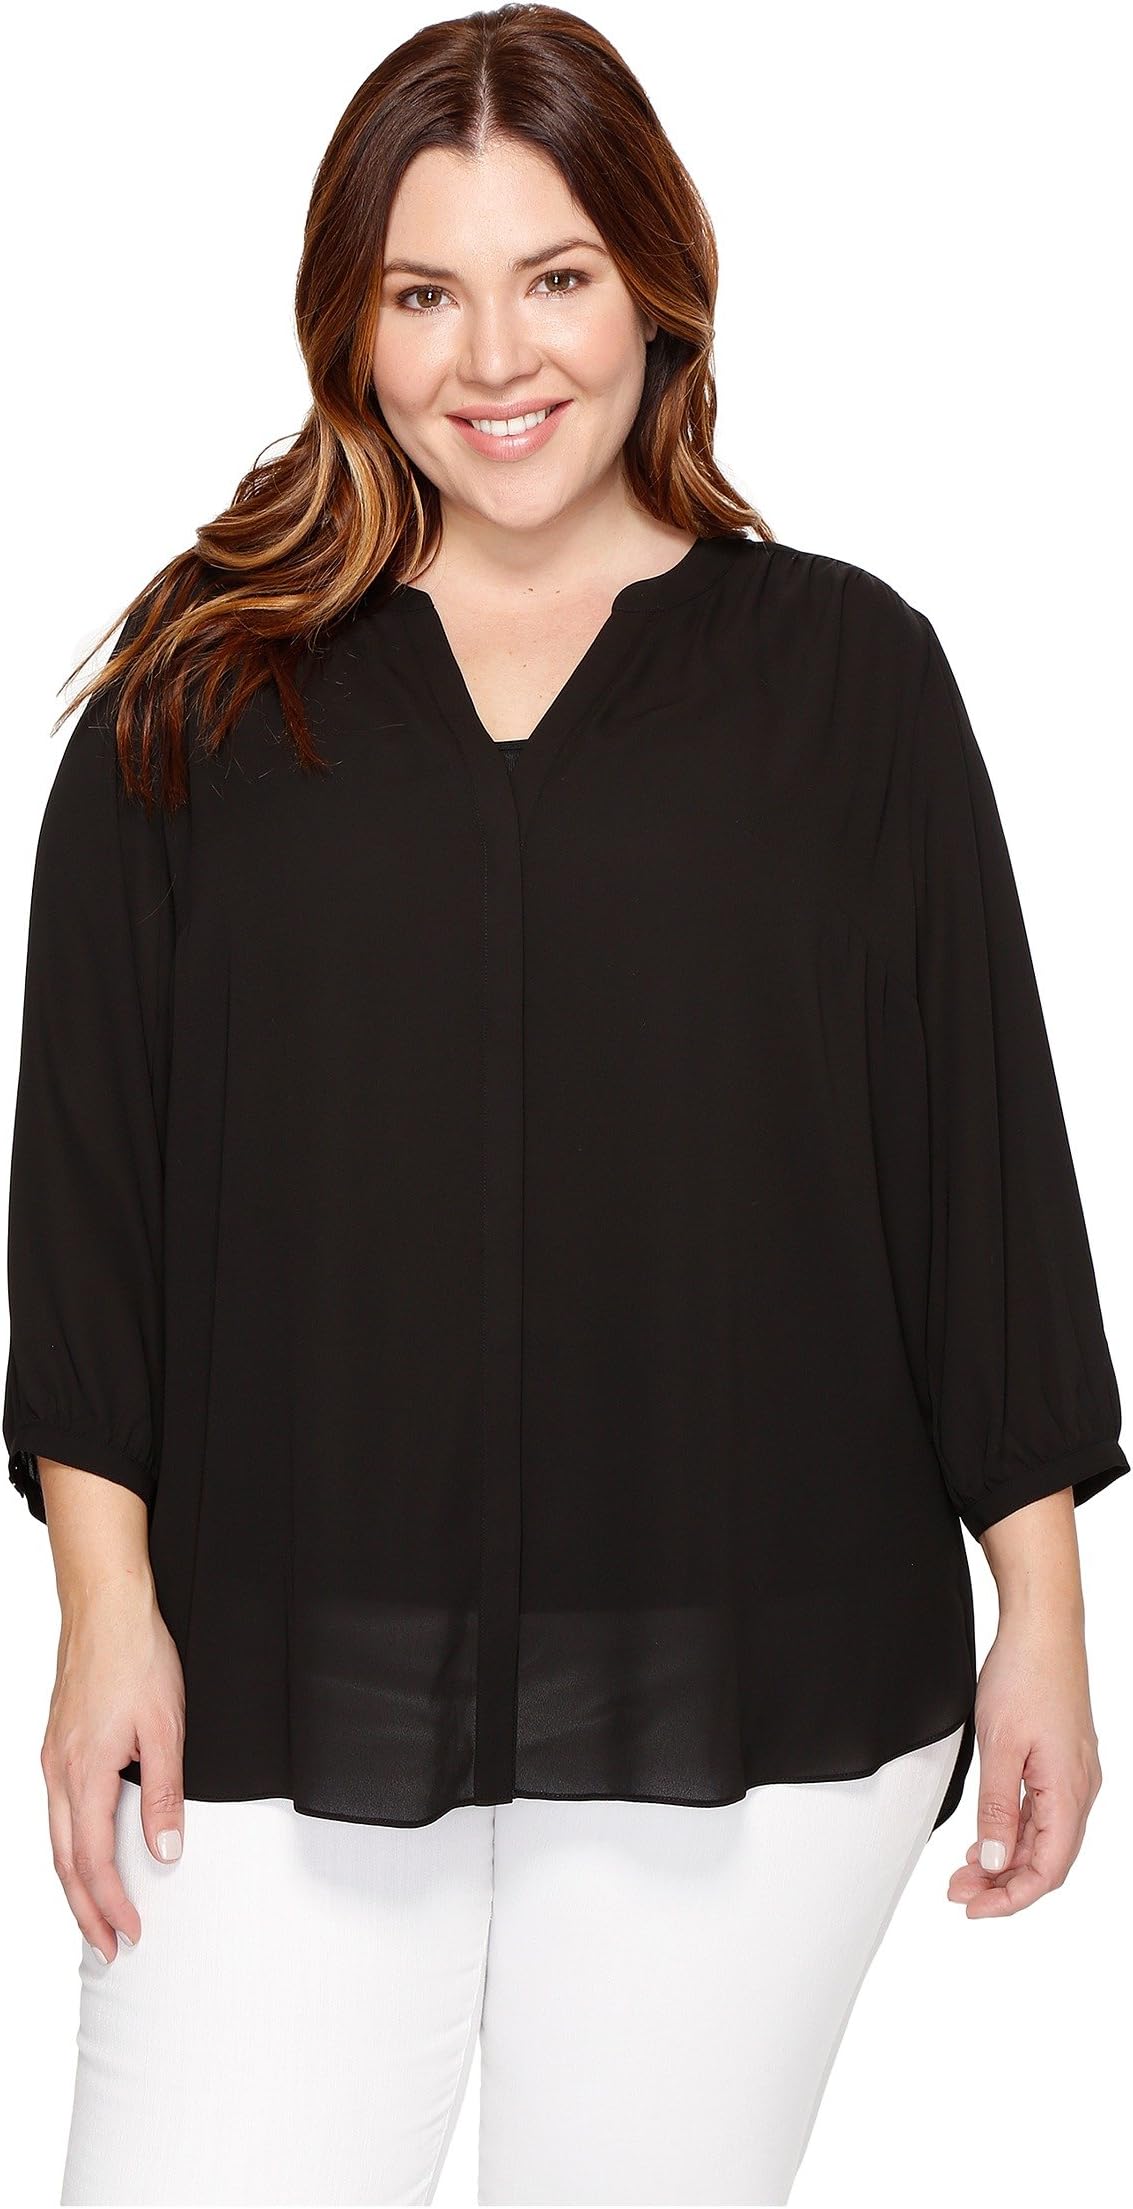 Блузка больших размеров с защипами NYDJ, черный блузка без рукавов больших размеров с подвернутой булавкой nydj цвет ramona dots